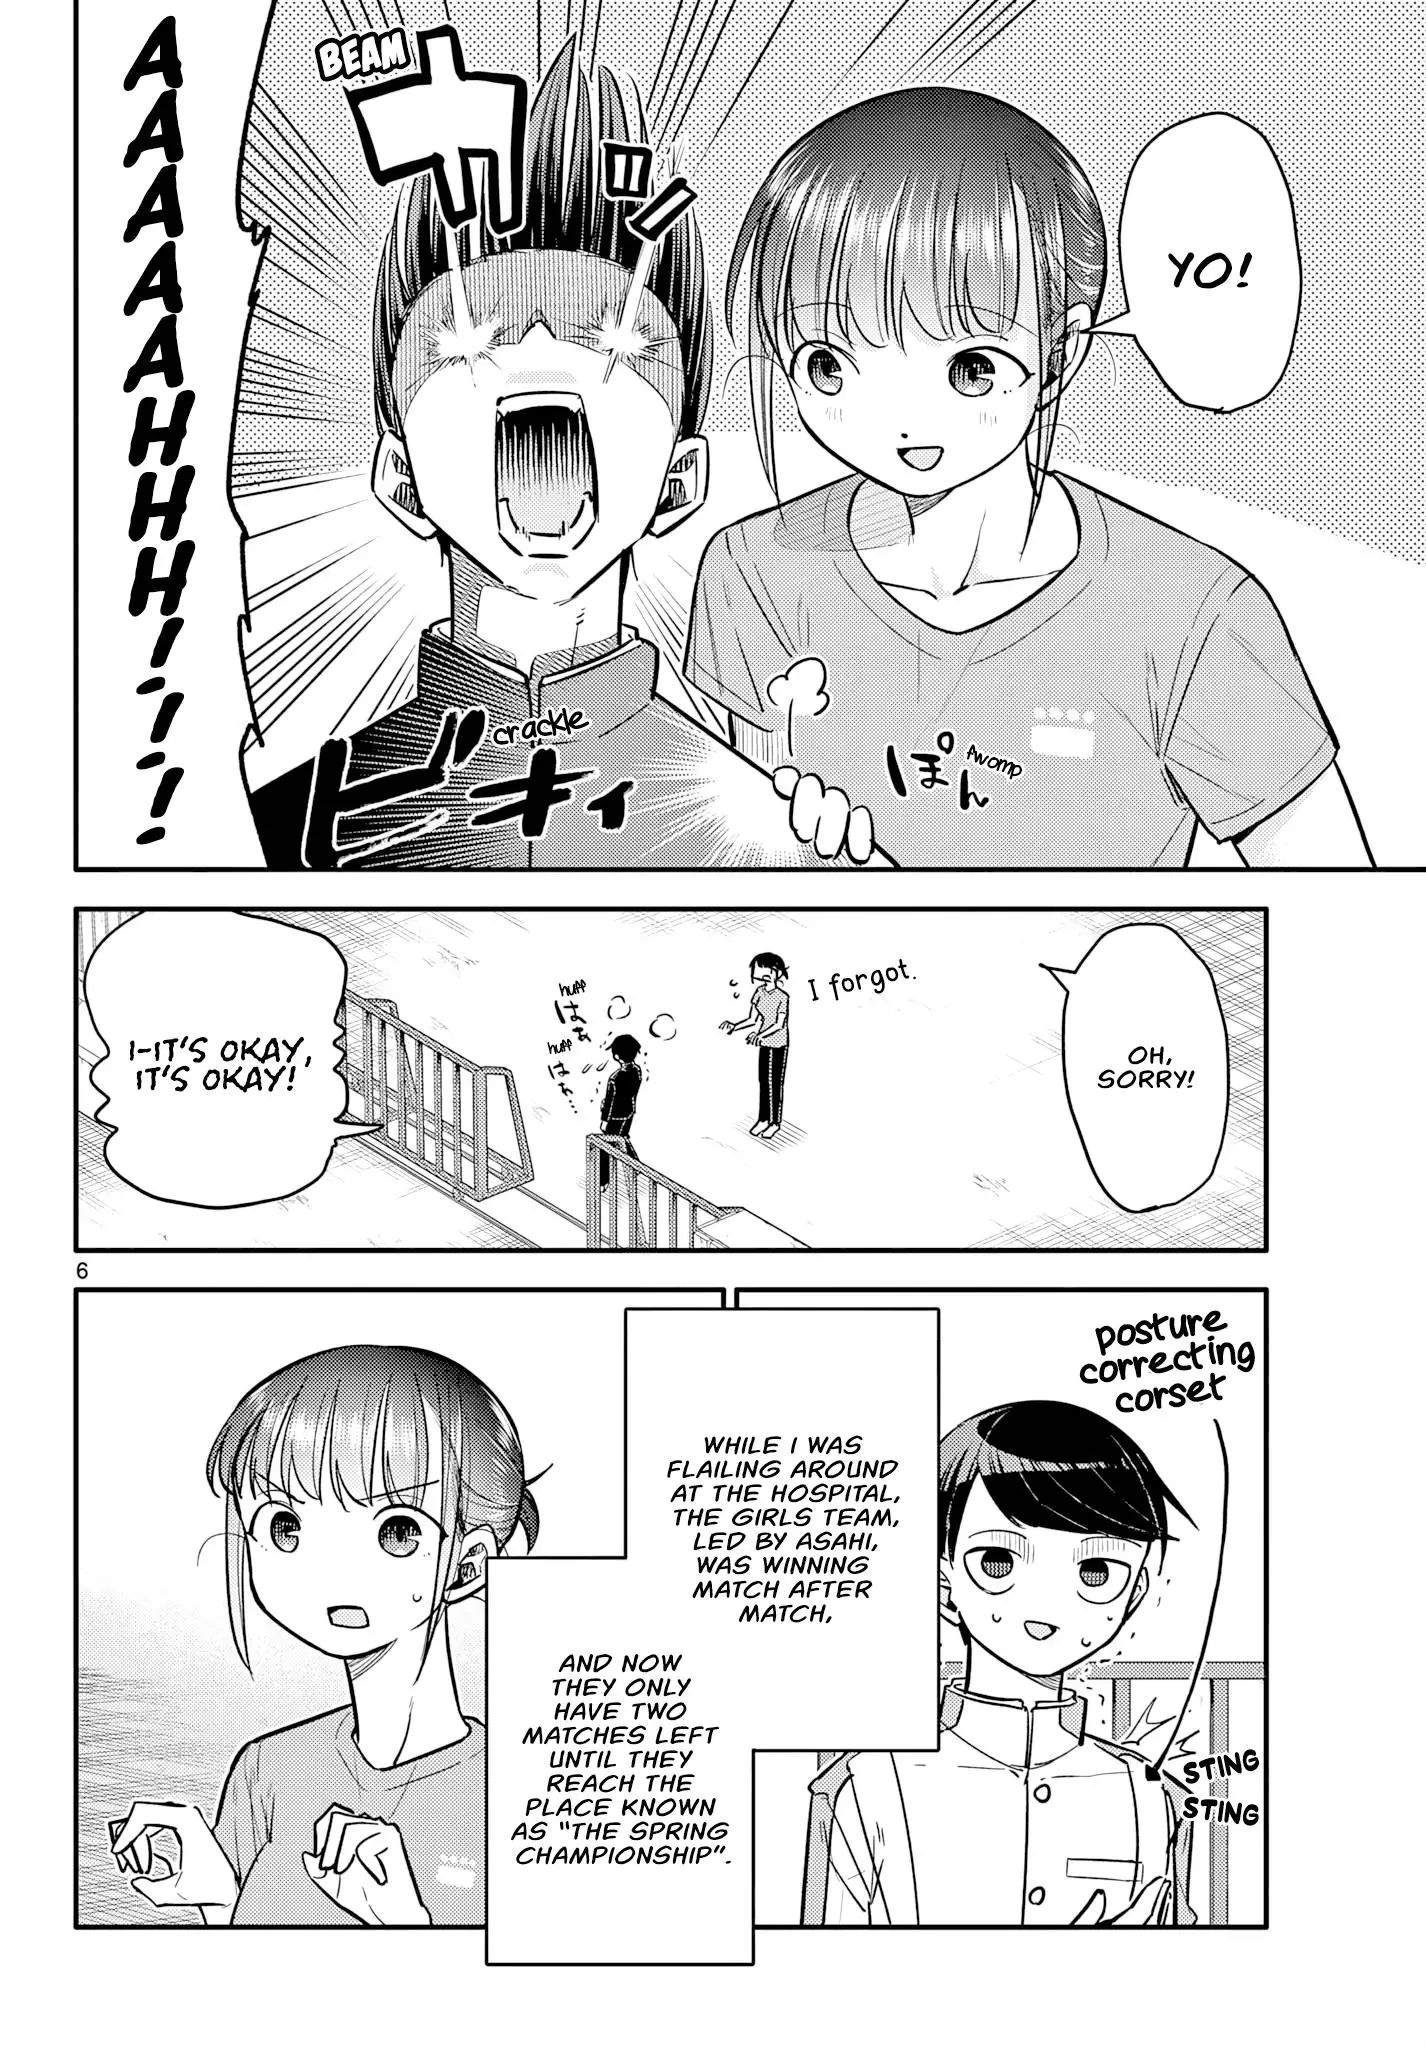 Chiisai Boku No Haru - 7 page 6-9f978db7